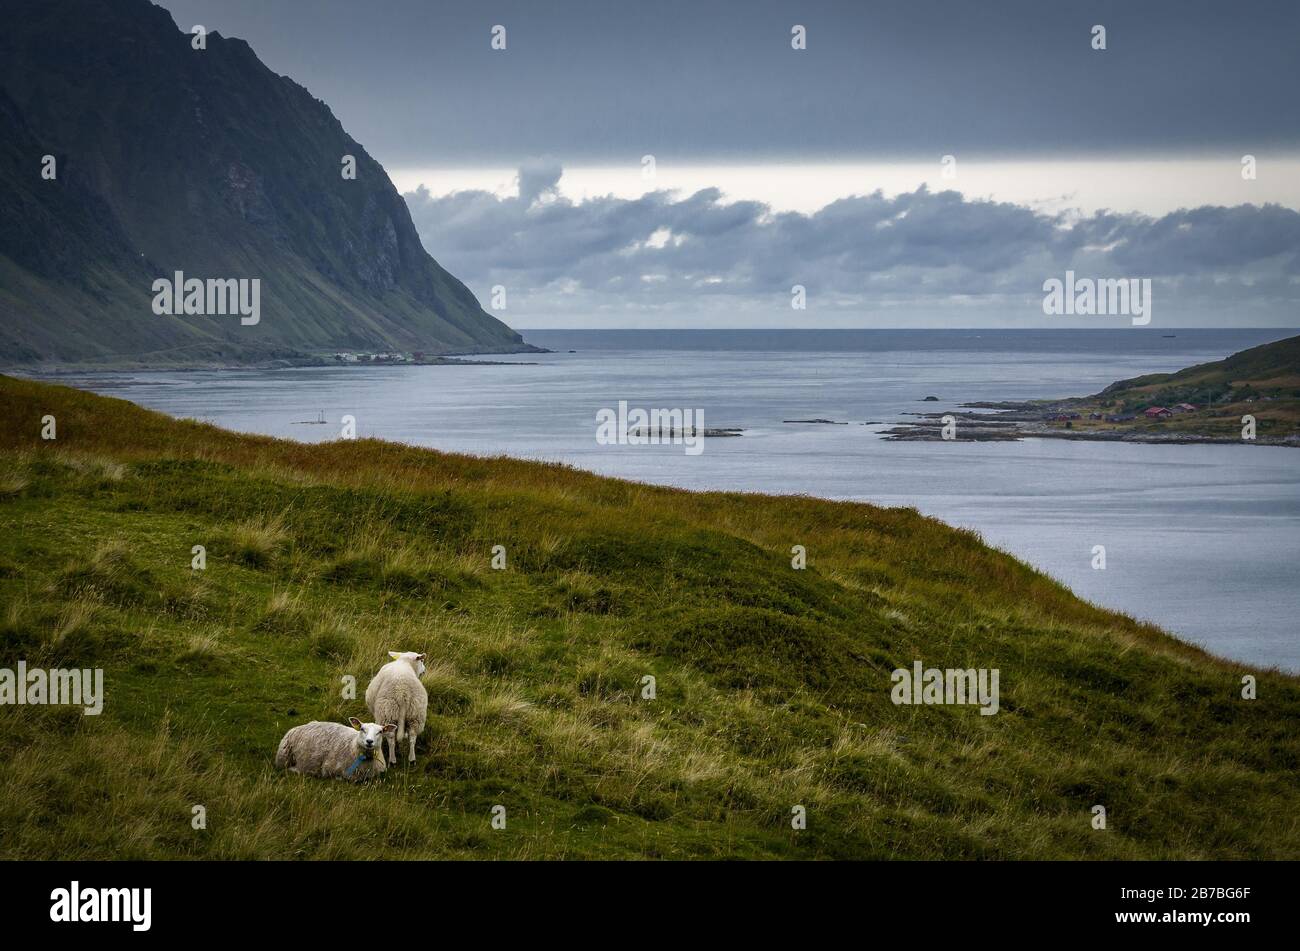 Nordic landscape with sheep on a gloomy day, Vestvågøya, Lofoten Islands, Norway Stock Photo